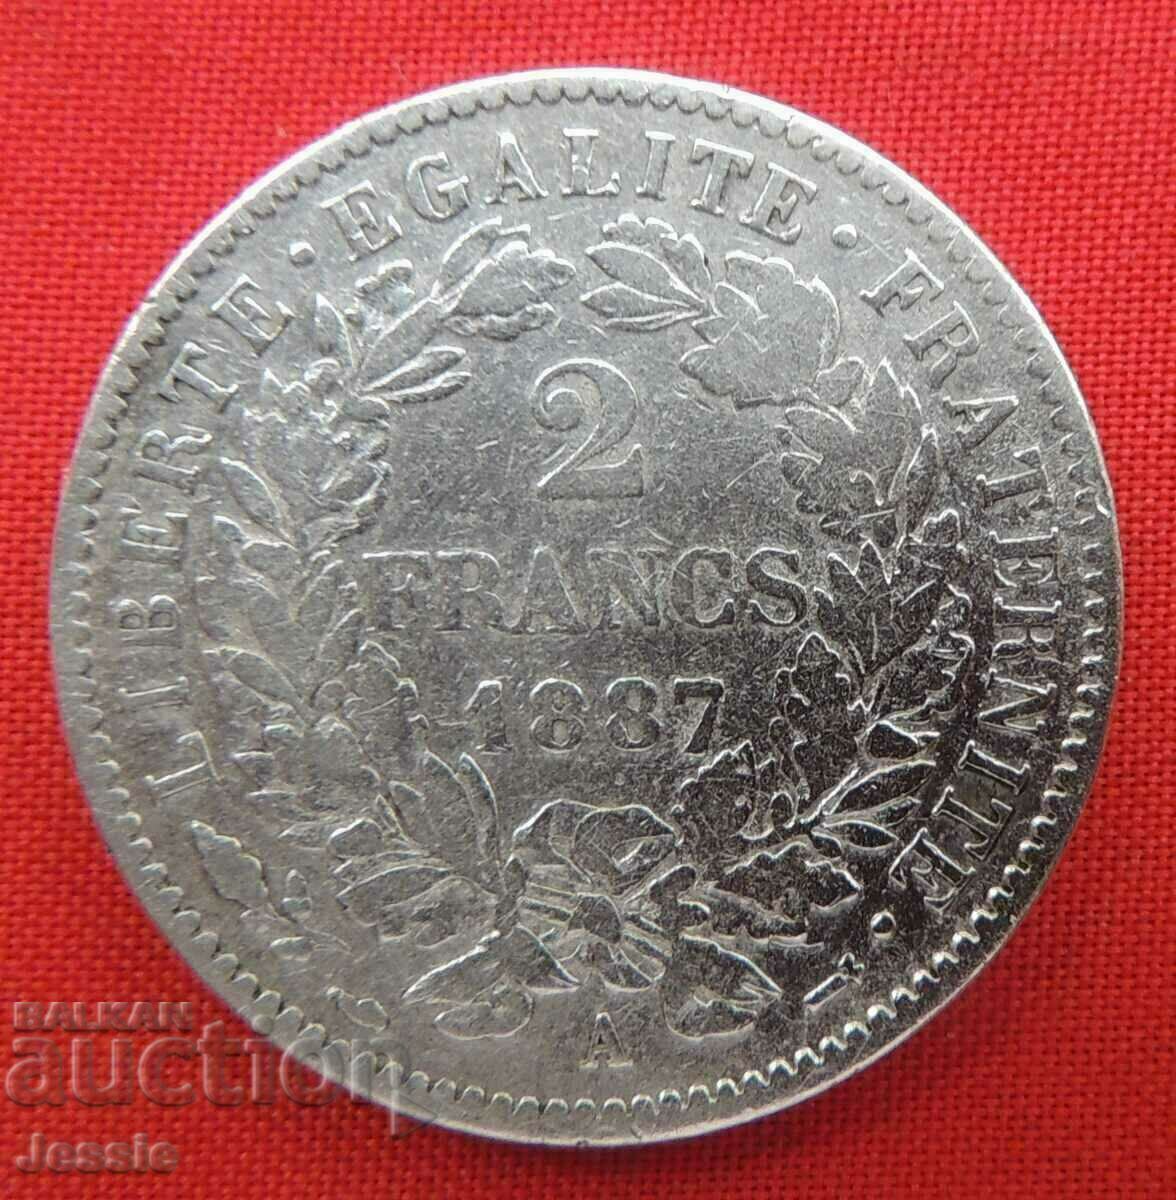 2 Francs 1887 A France silver - Paris